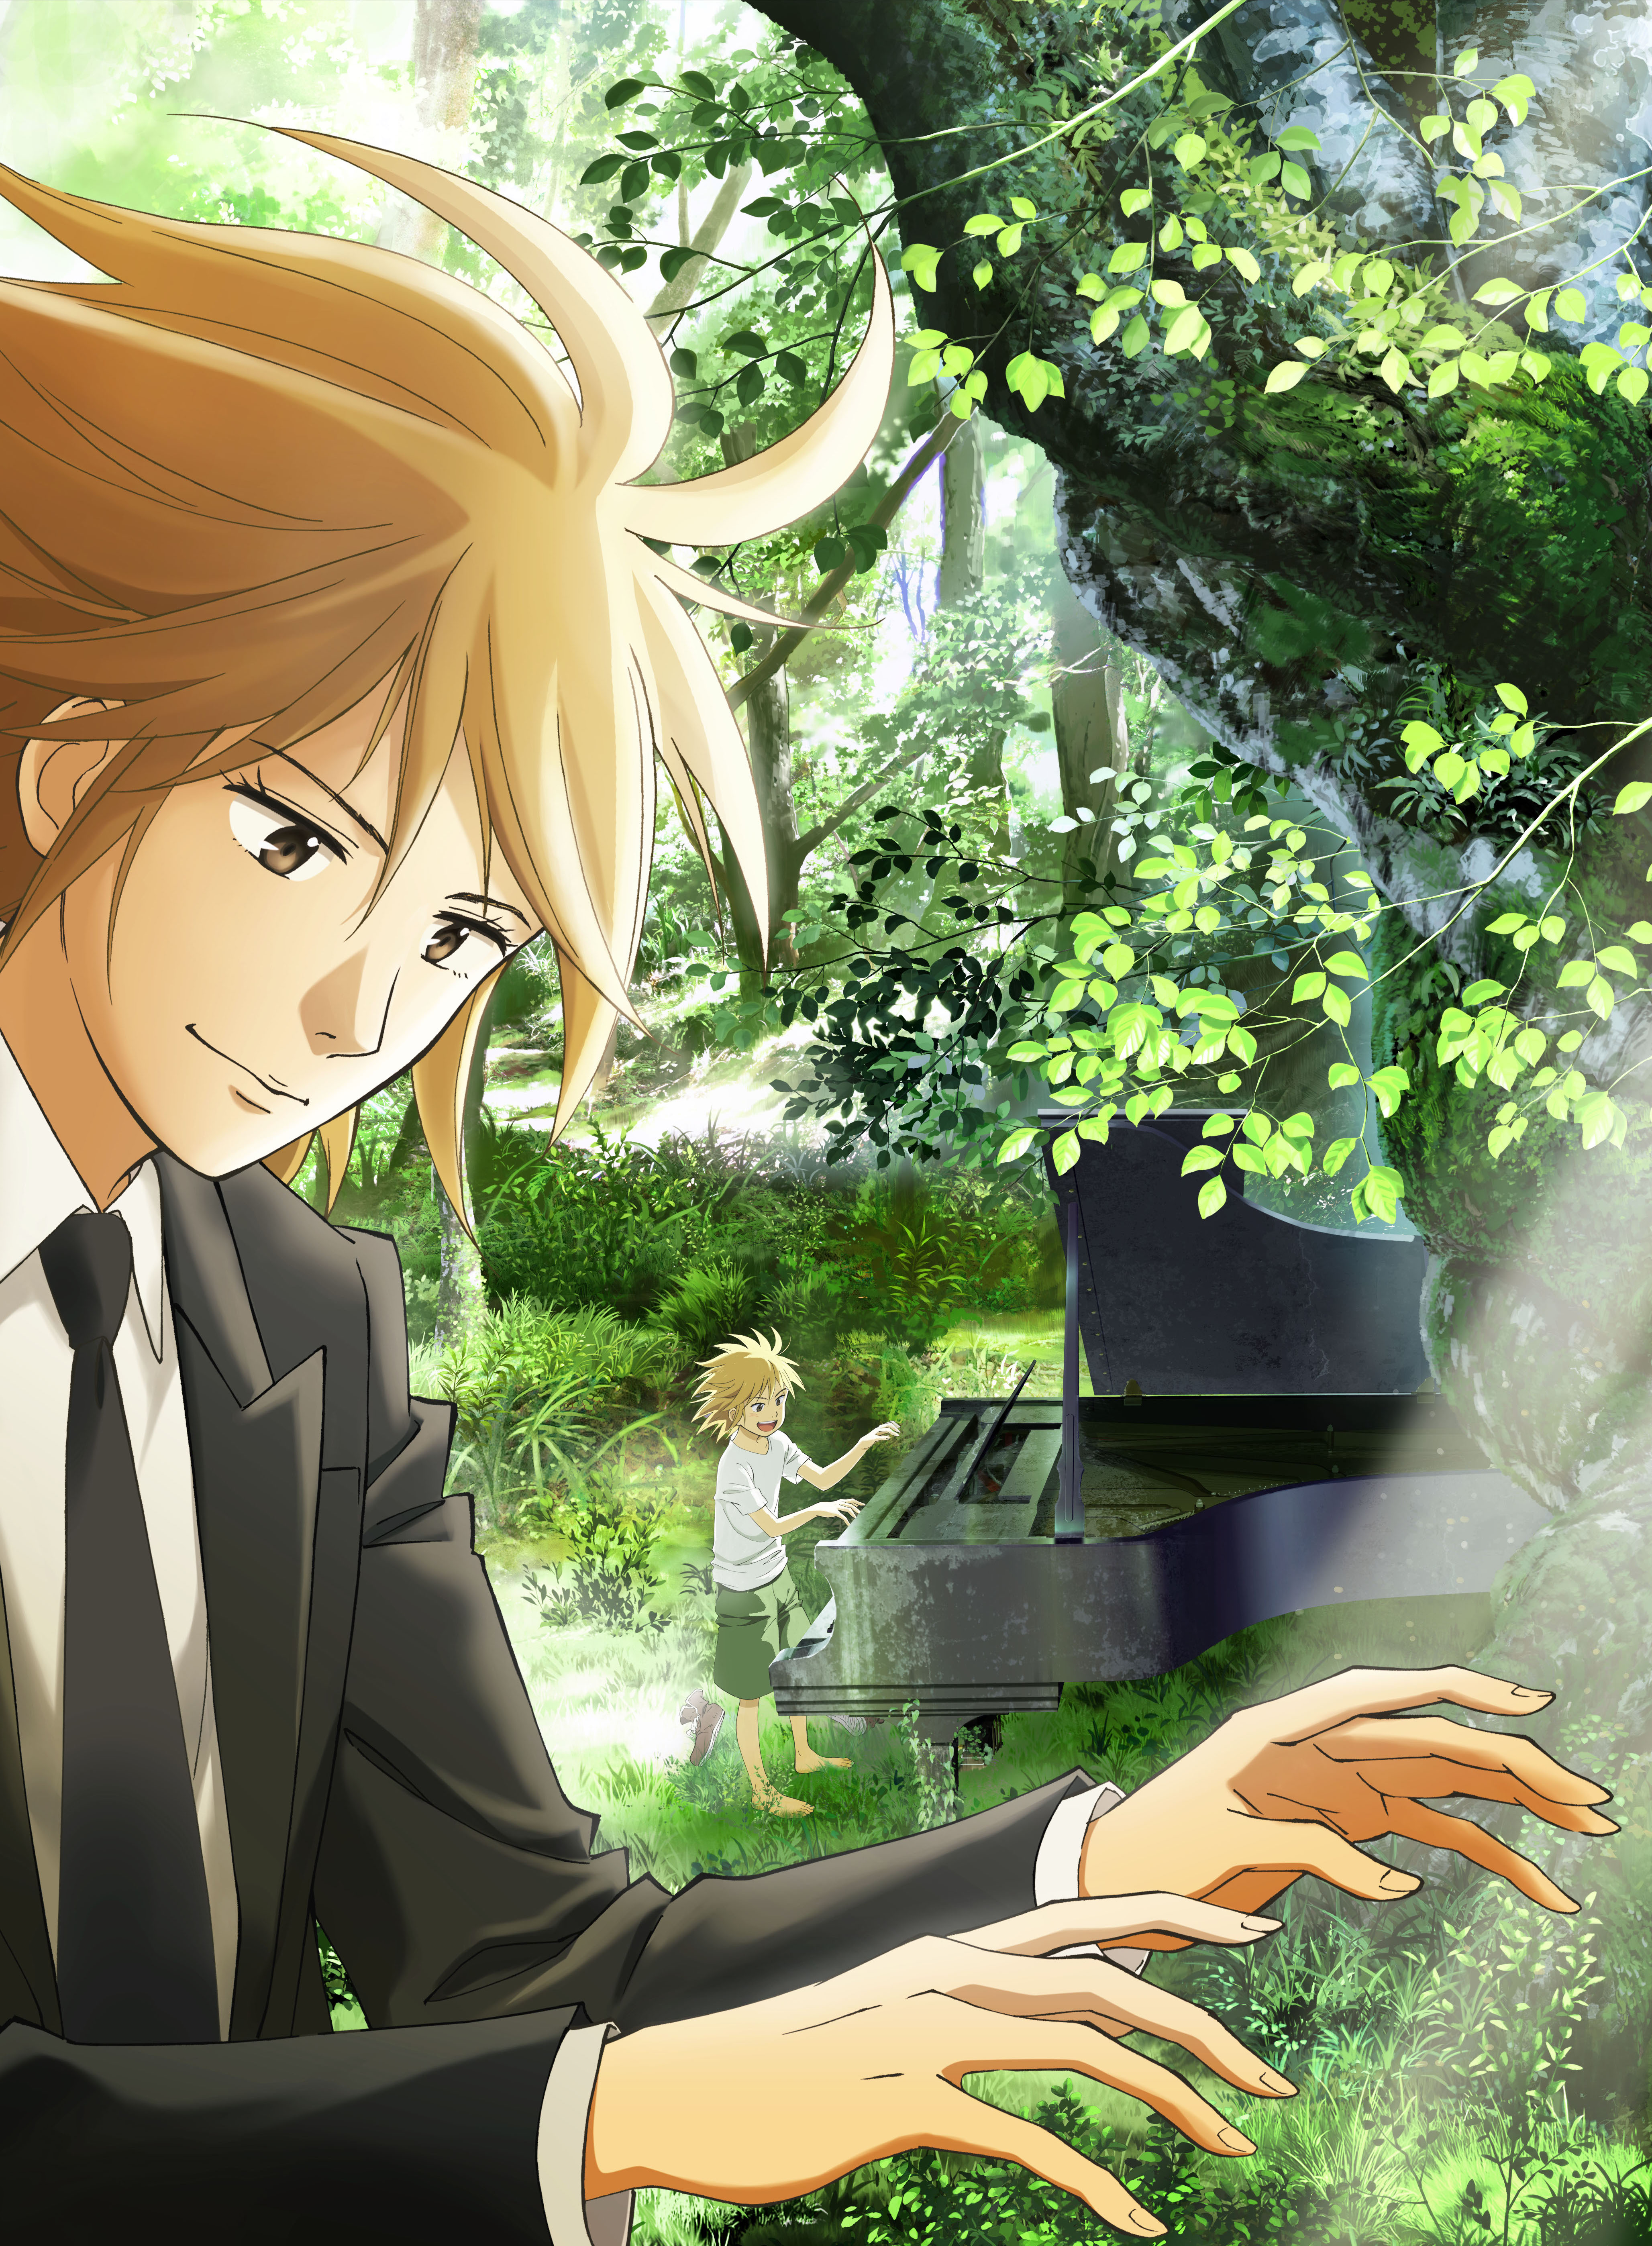 TVアニメ「ピアノの森」